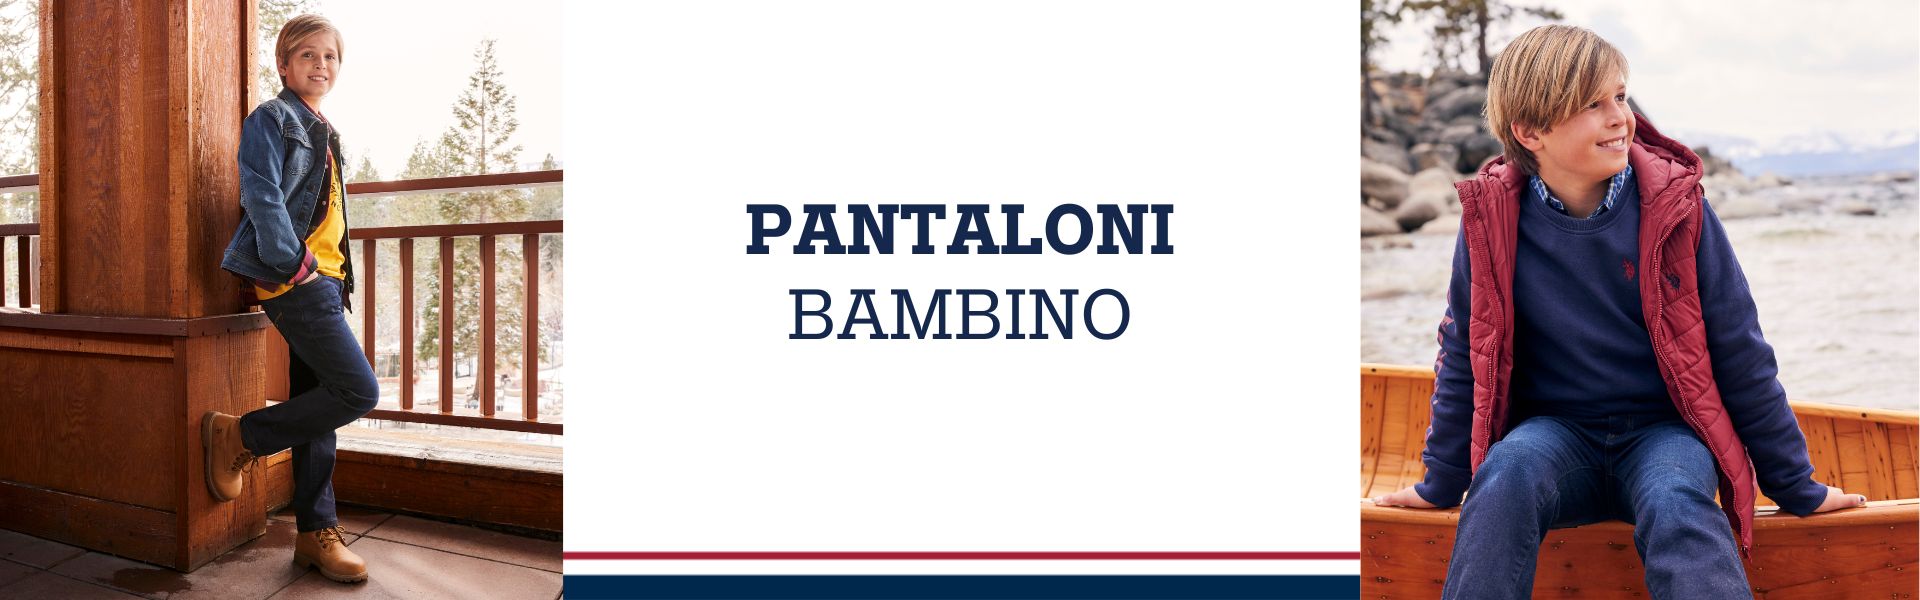 PANTALONI BAMBINO